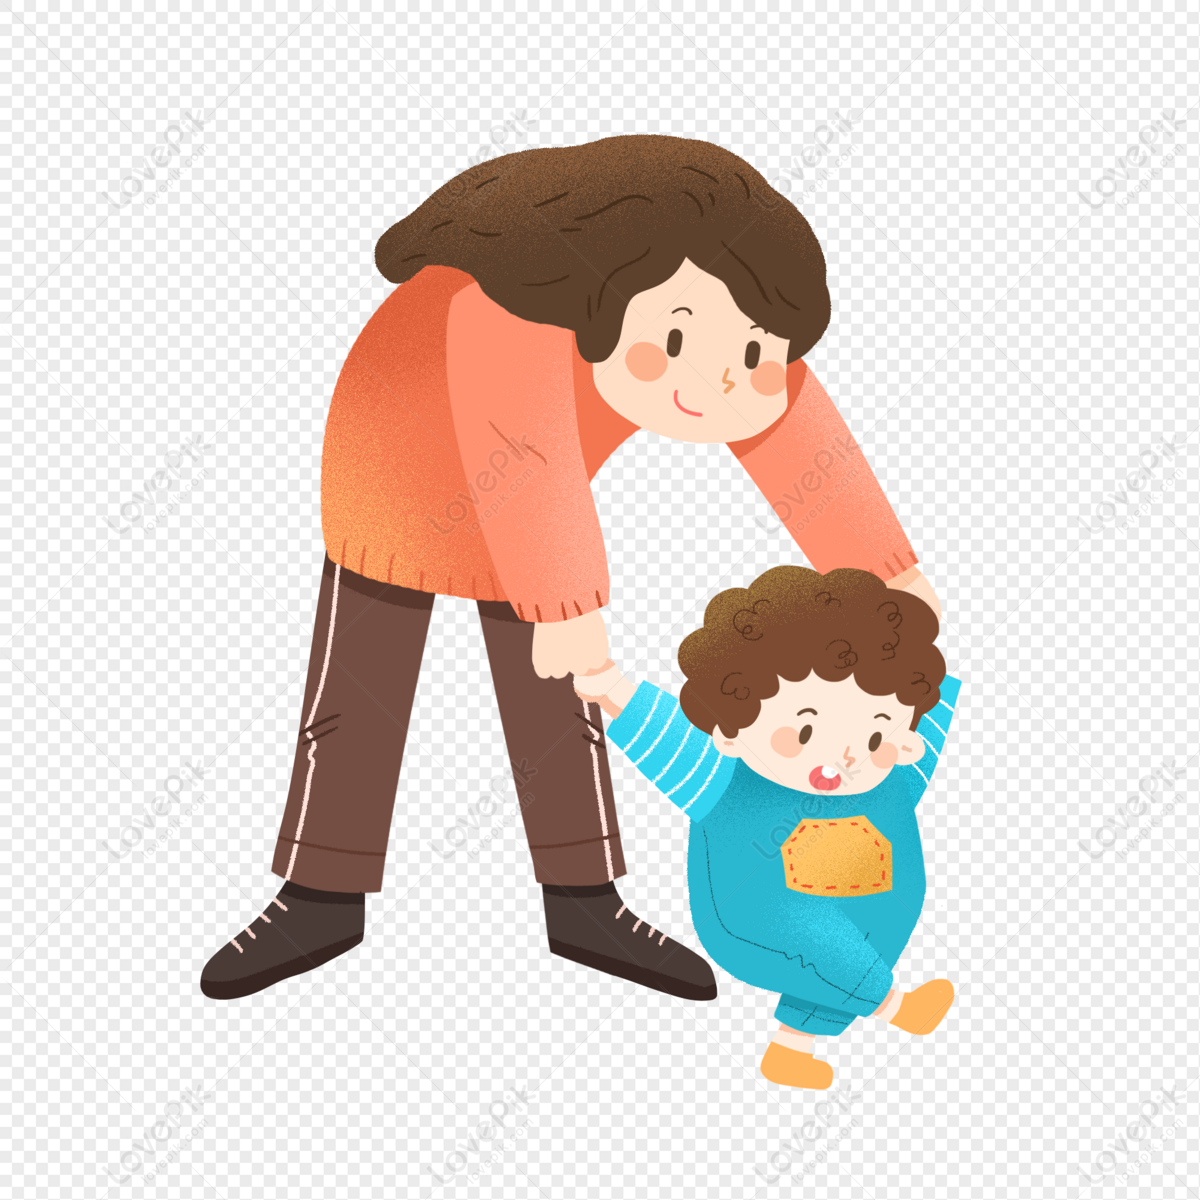 La madre y el bebé/Niño